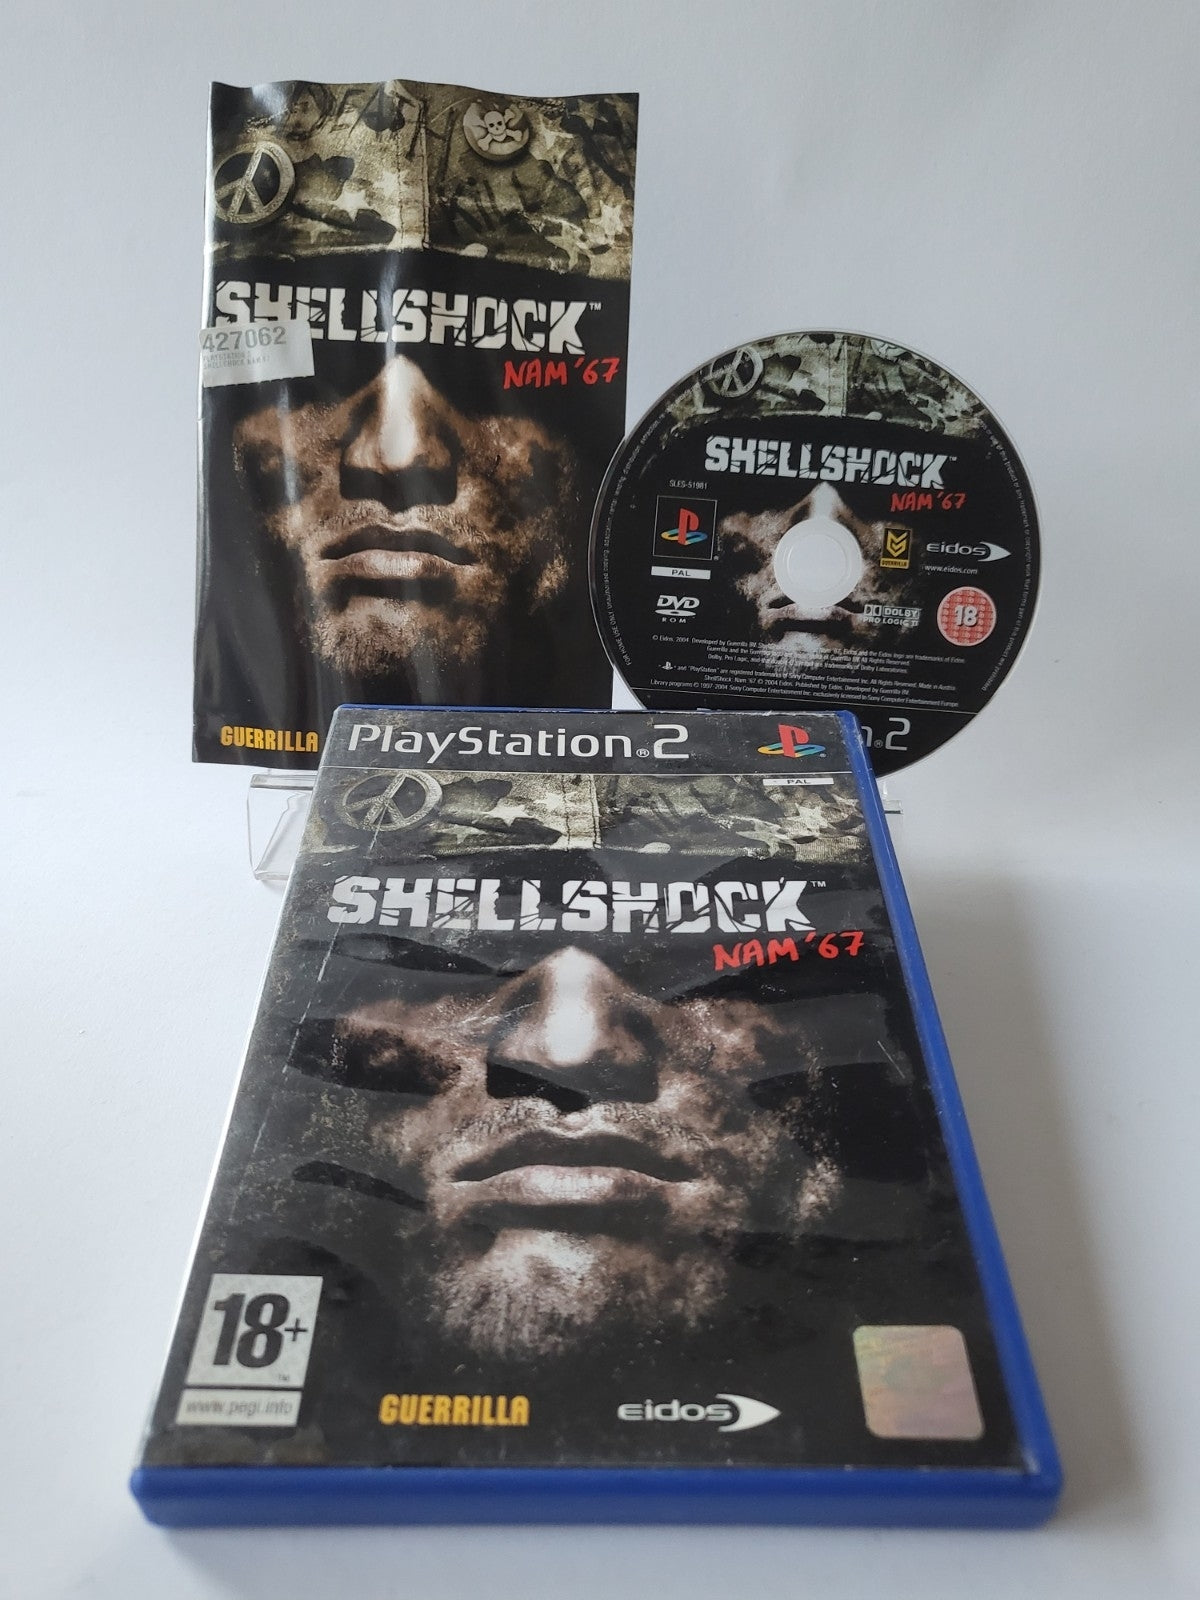 Shellshock Nam '67 Playstation 2